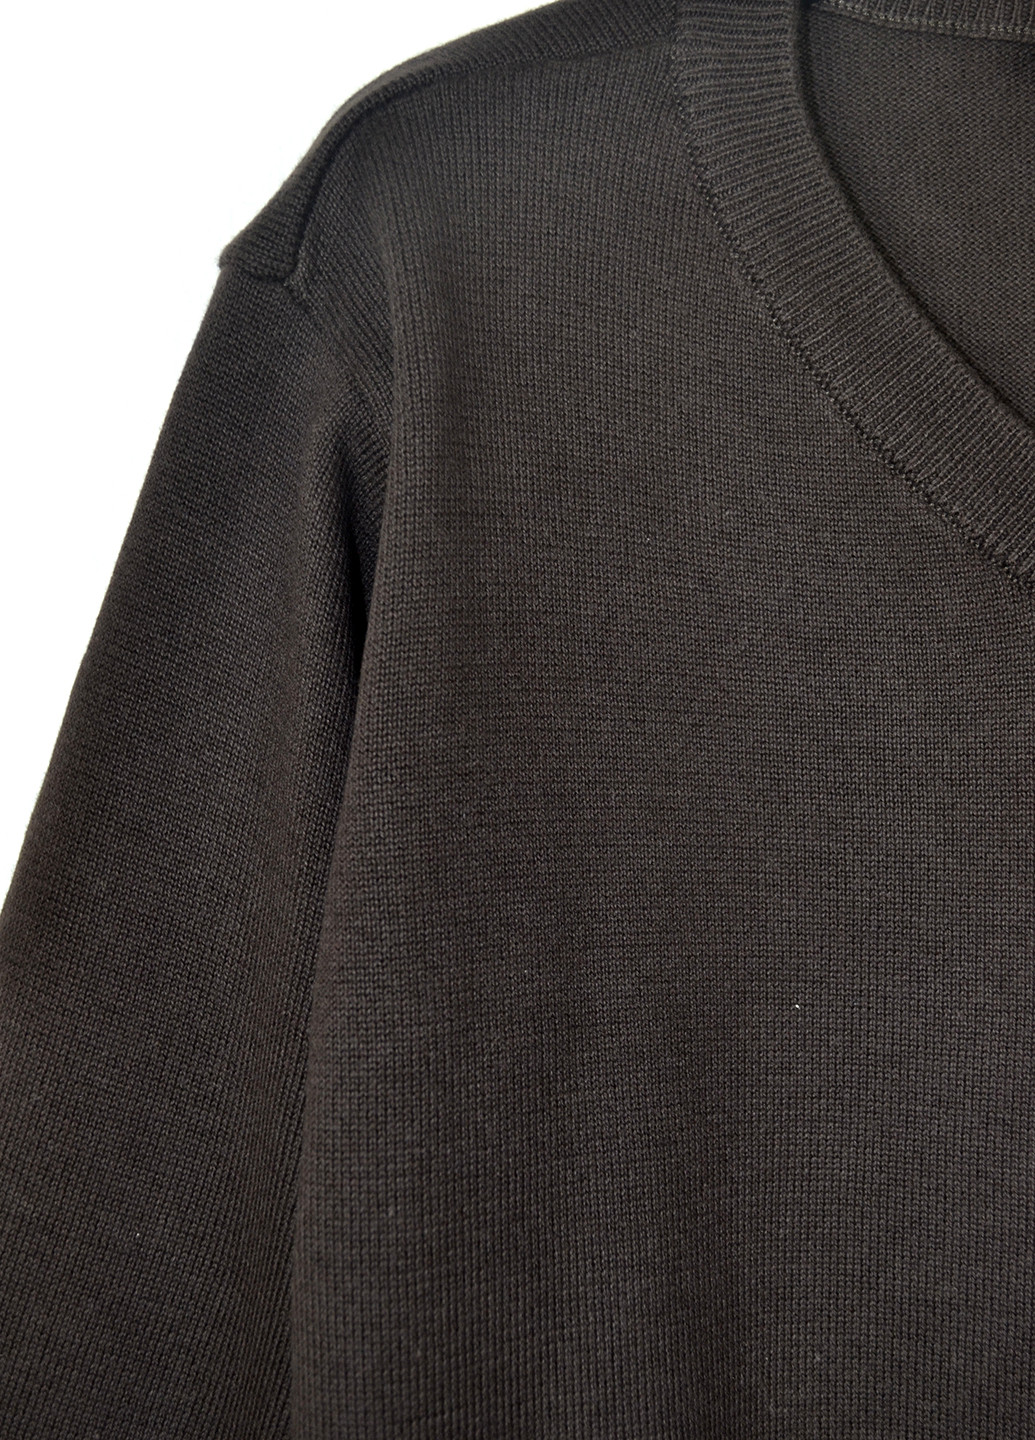 Черный демисезонный пуловер пуловер TU